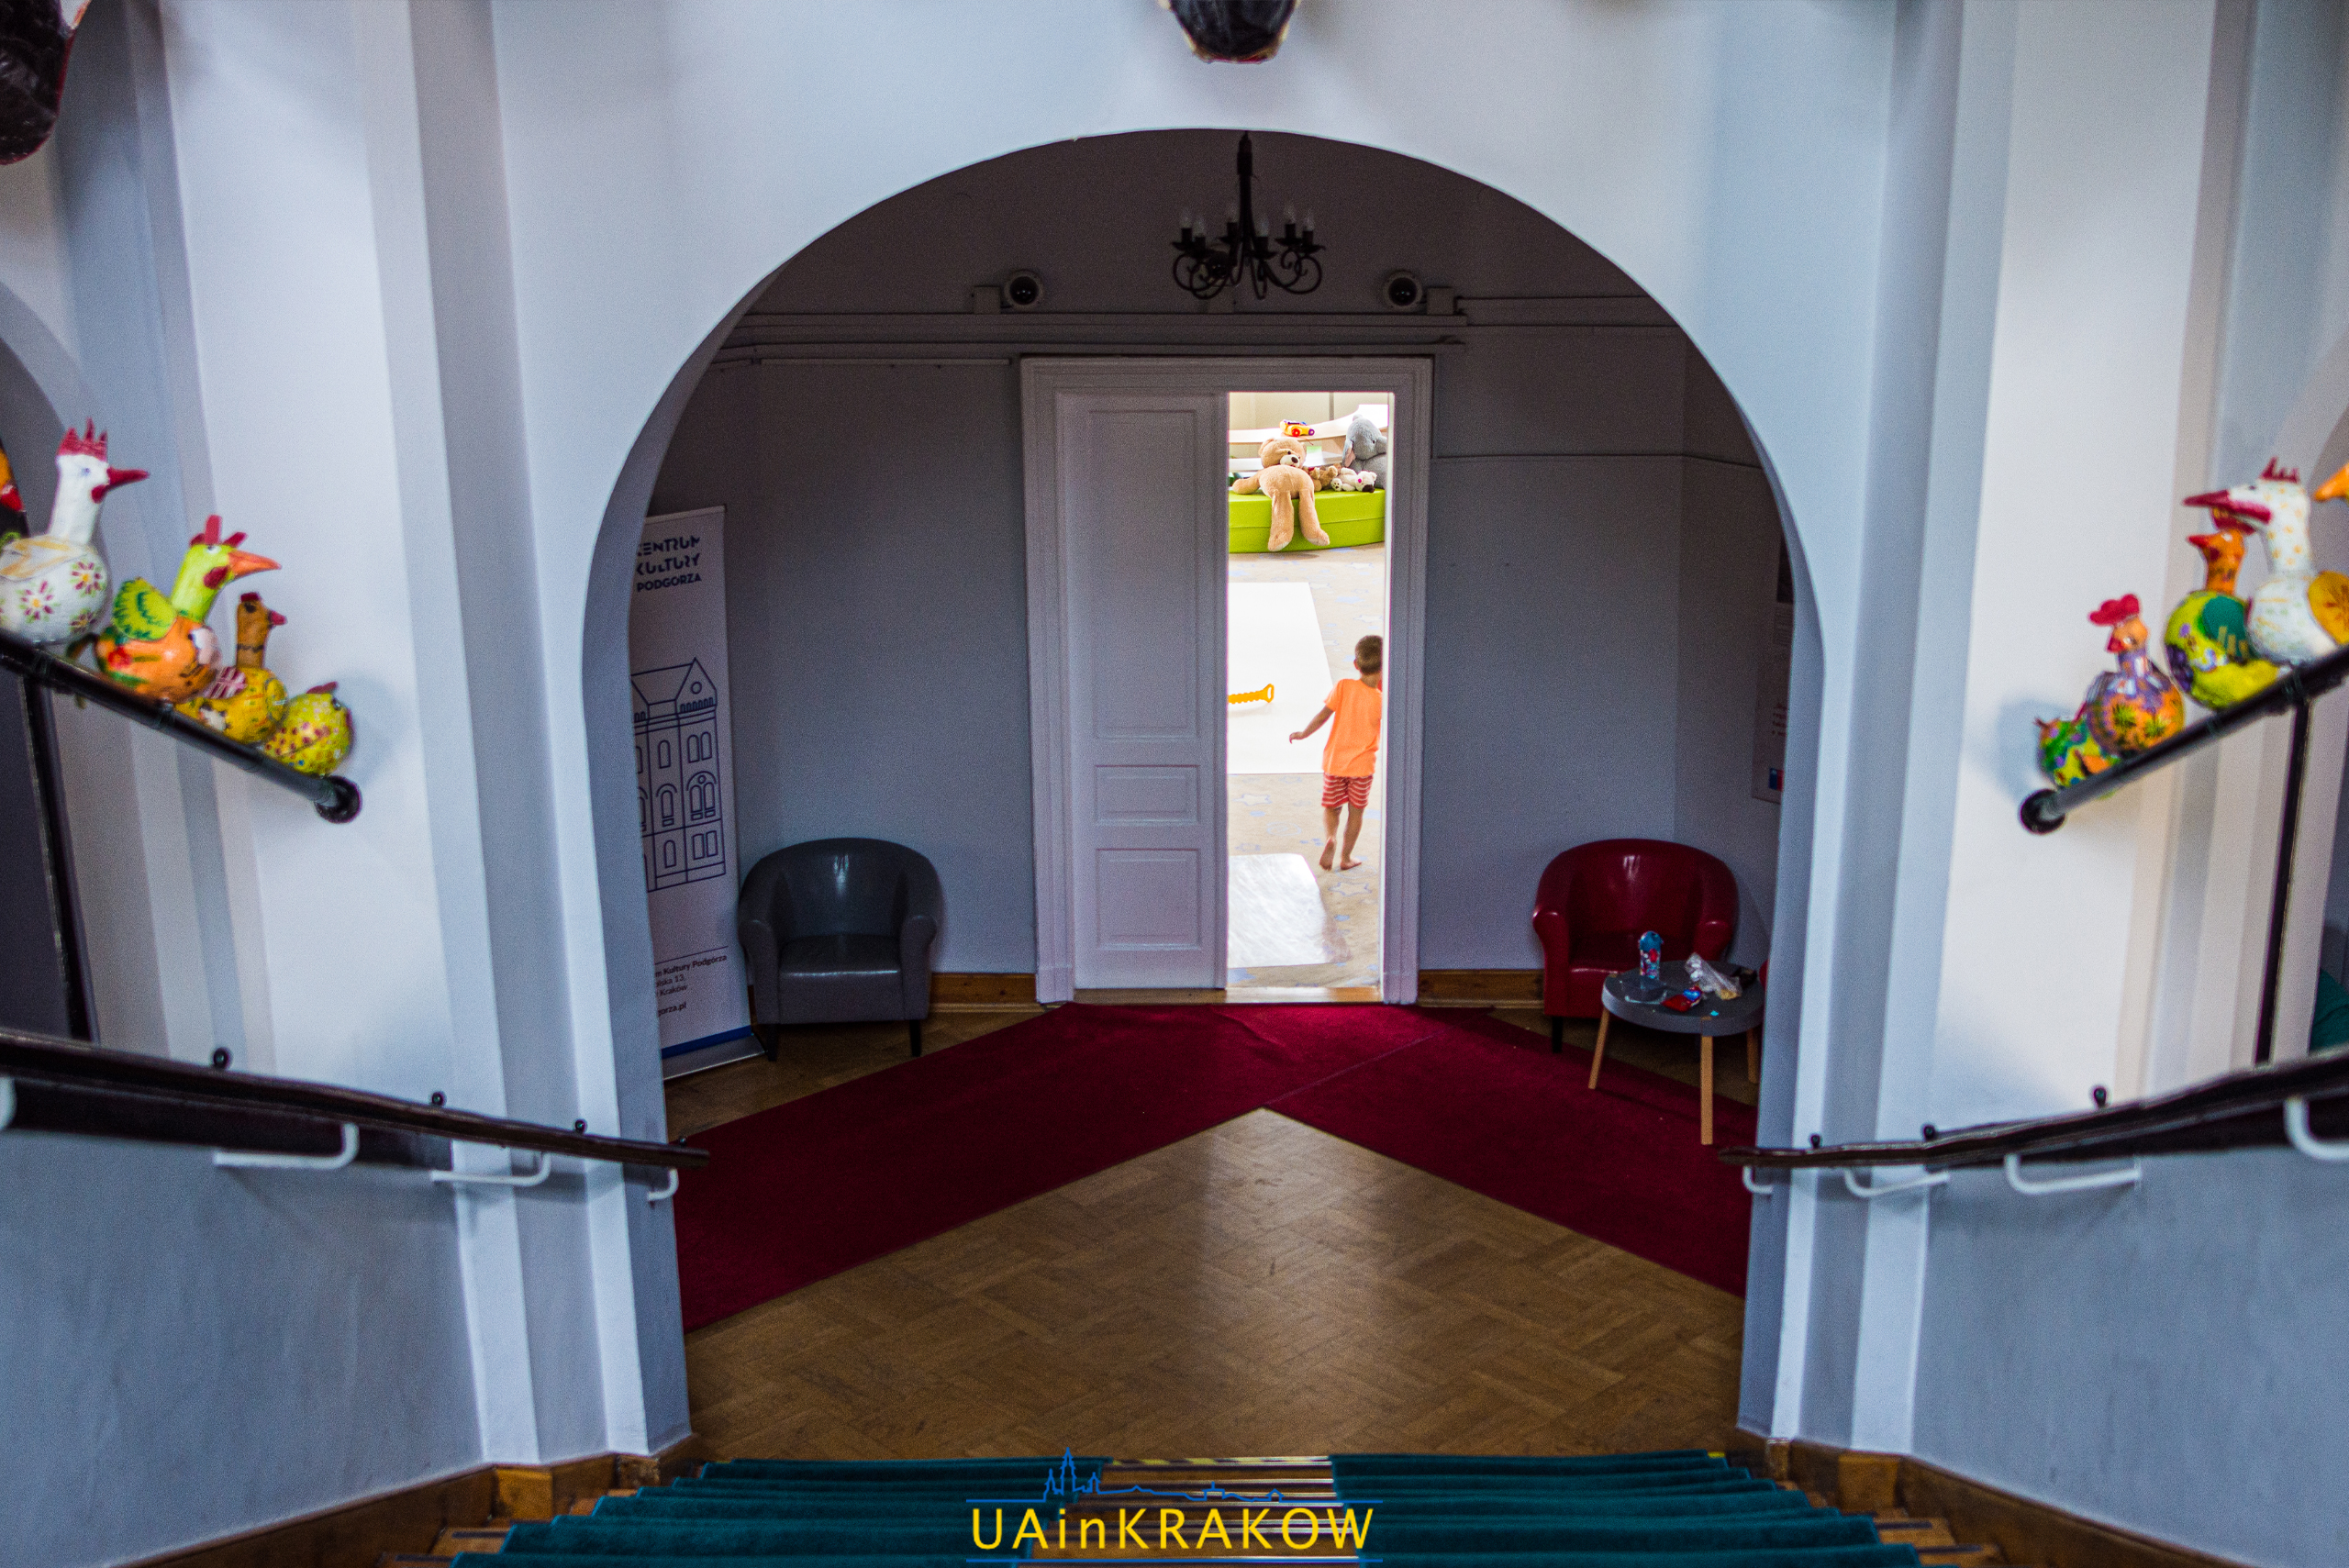 “Доступний для кожного”: як працює культурний центр у серці Кракова uainkrakow21